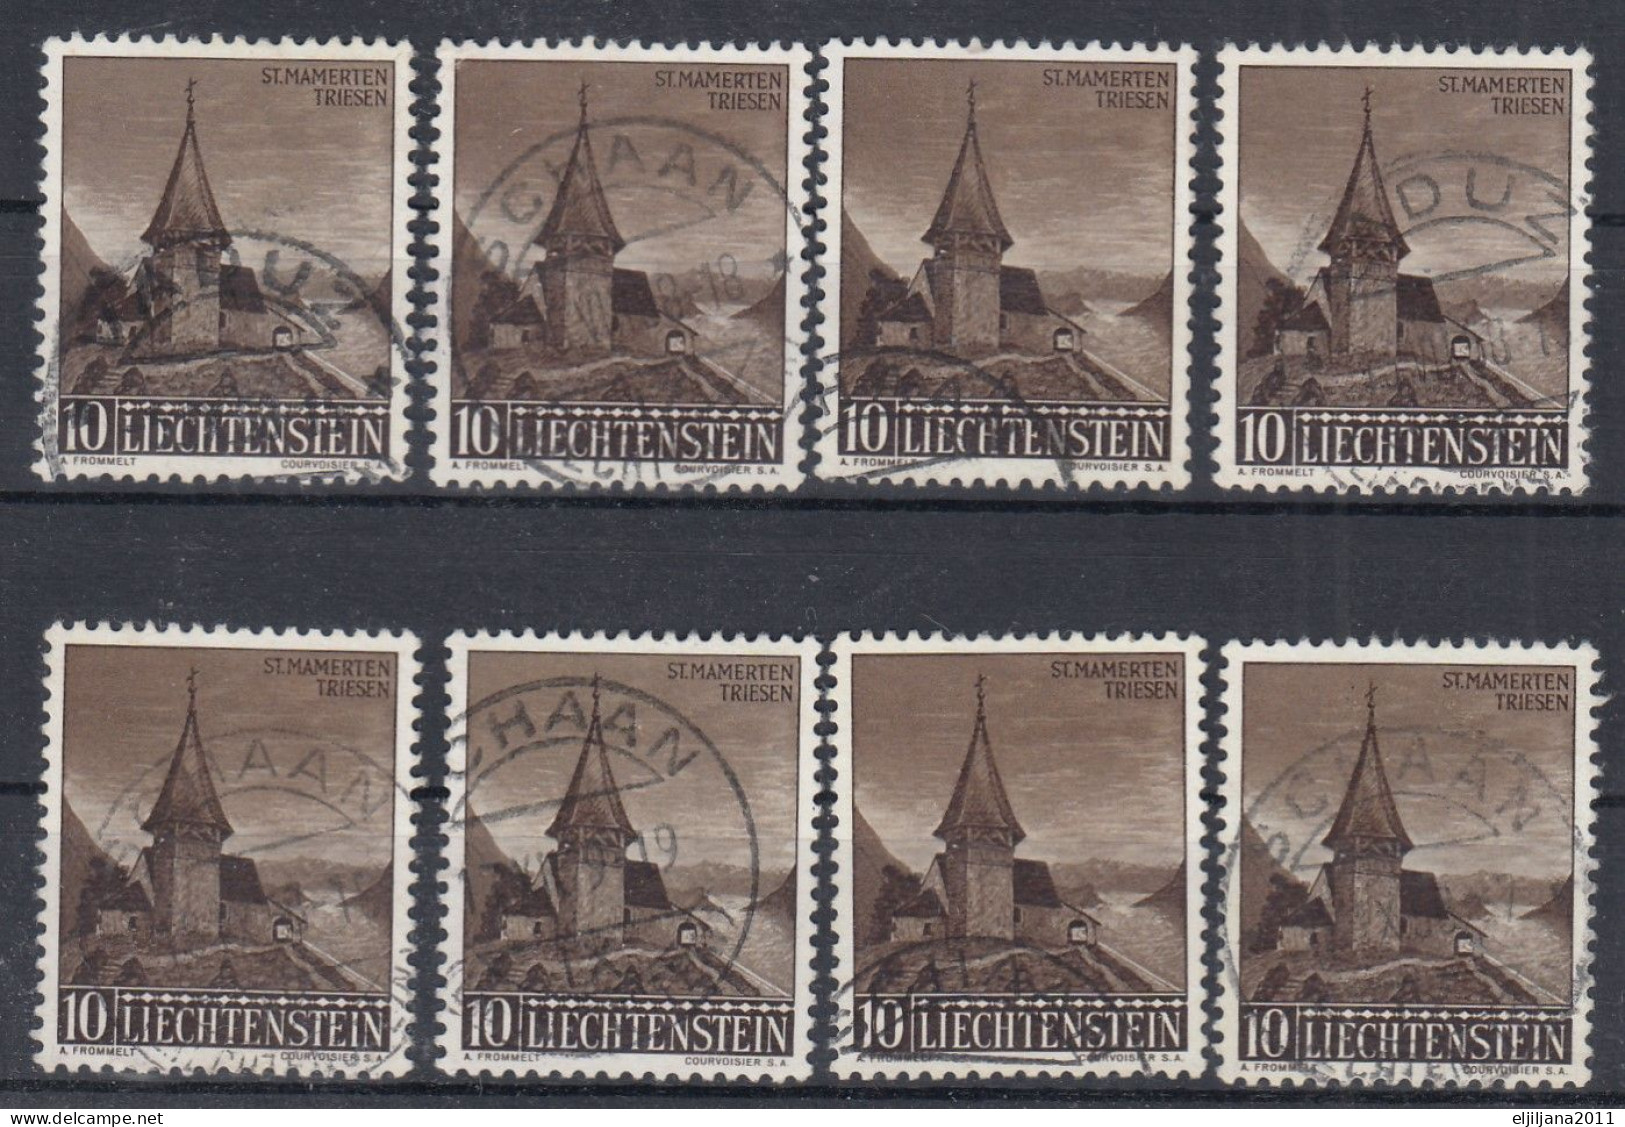 ⁕ Liechtenstein 1957 ⁕ Kapelle St. Mamerten Triesen Mi.362 ⁕ 8v Used - Gebraucht